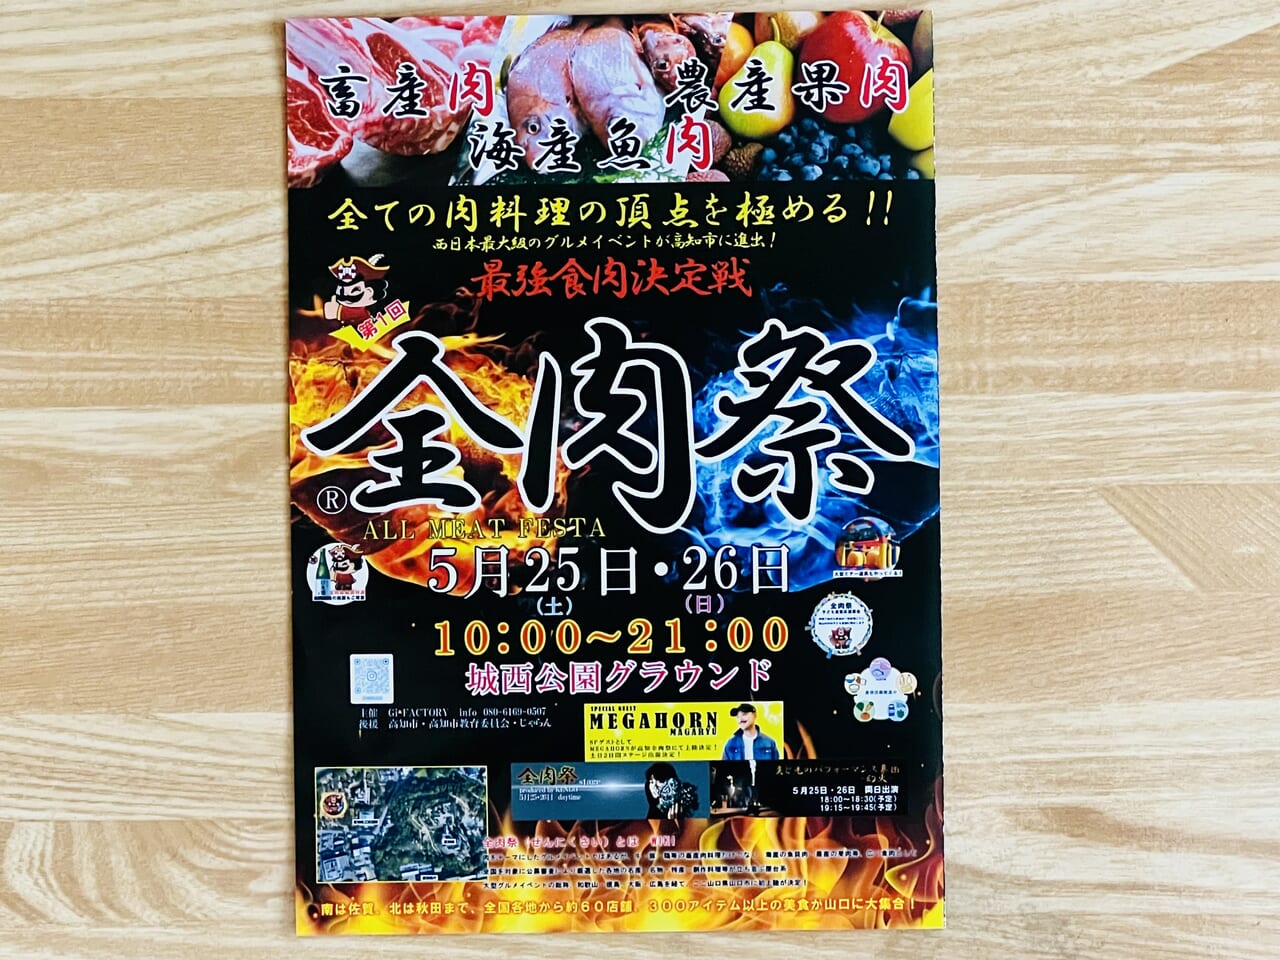 高知市丸ノ内にある城西公園で行われる「第1回 全肉祭 in 高知」のチラシ